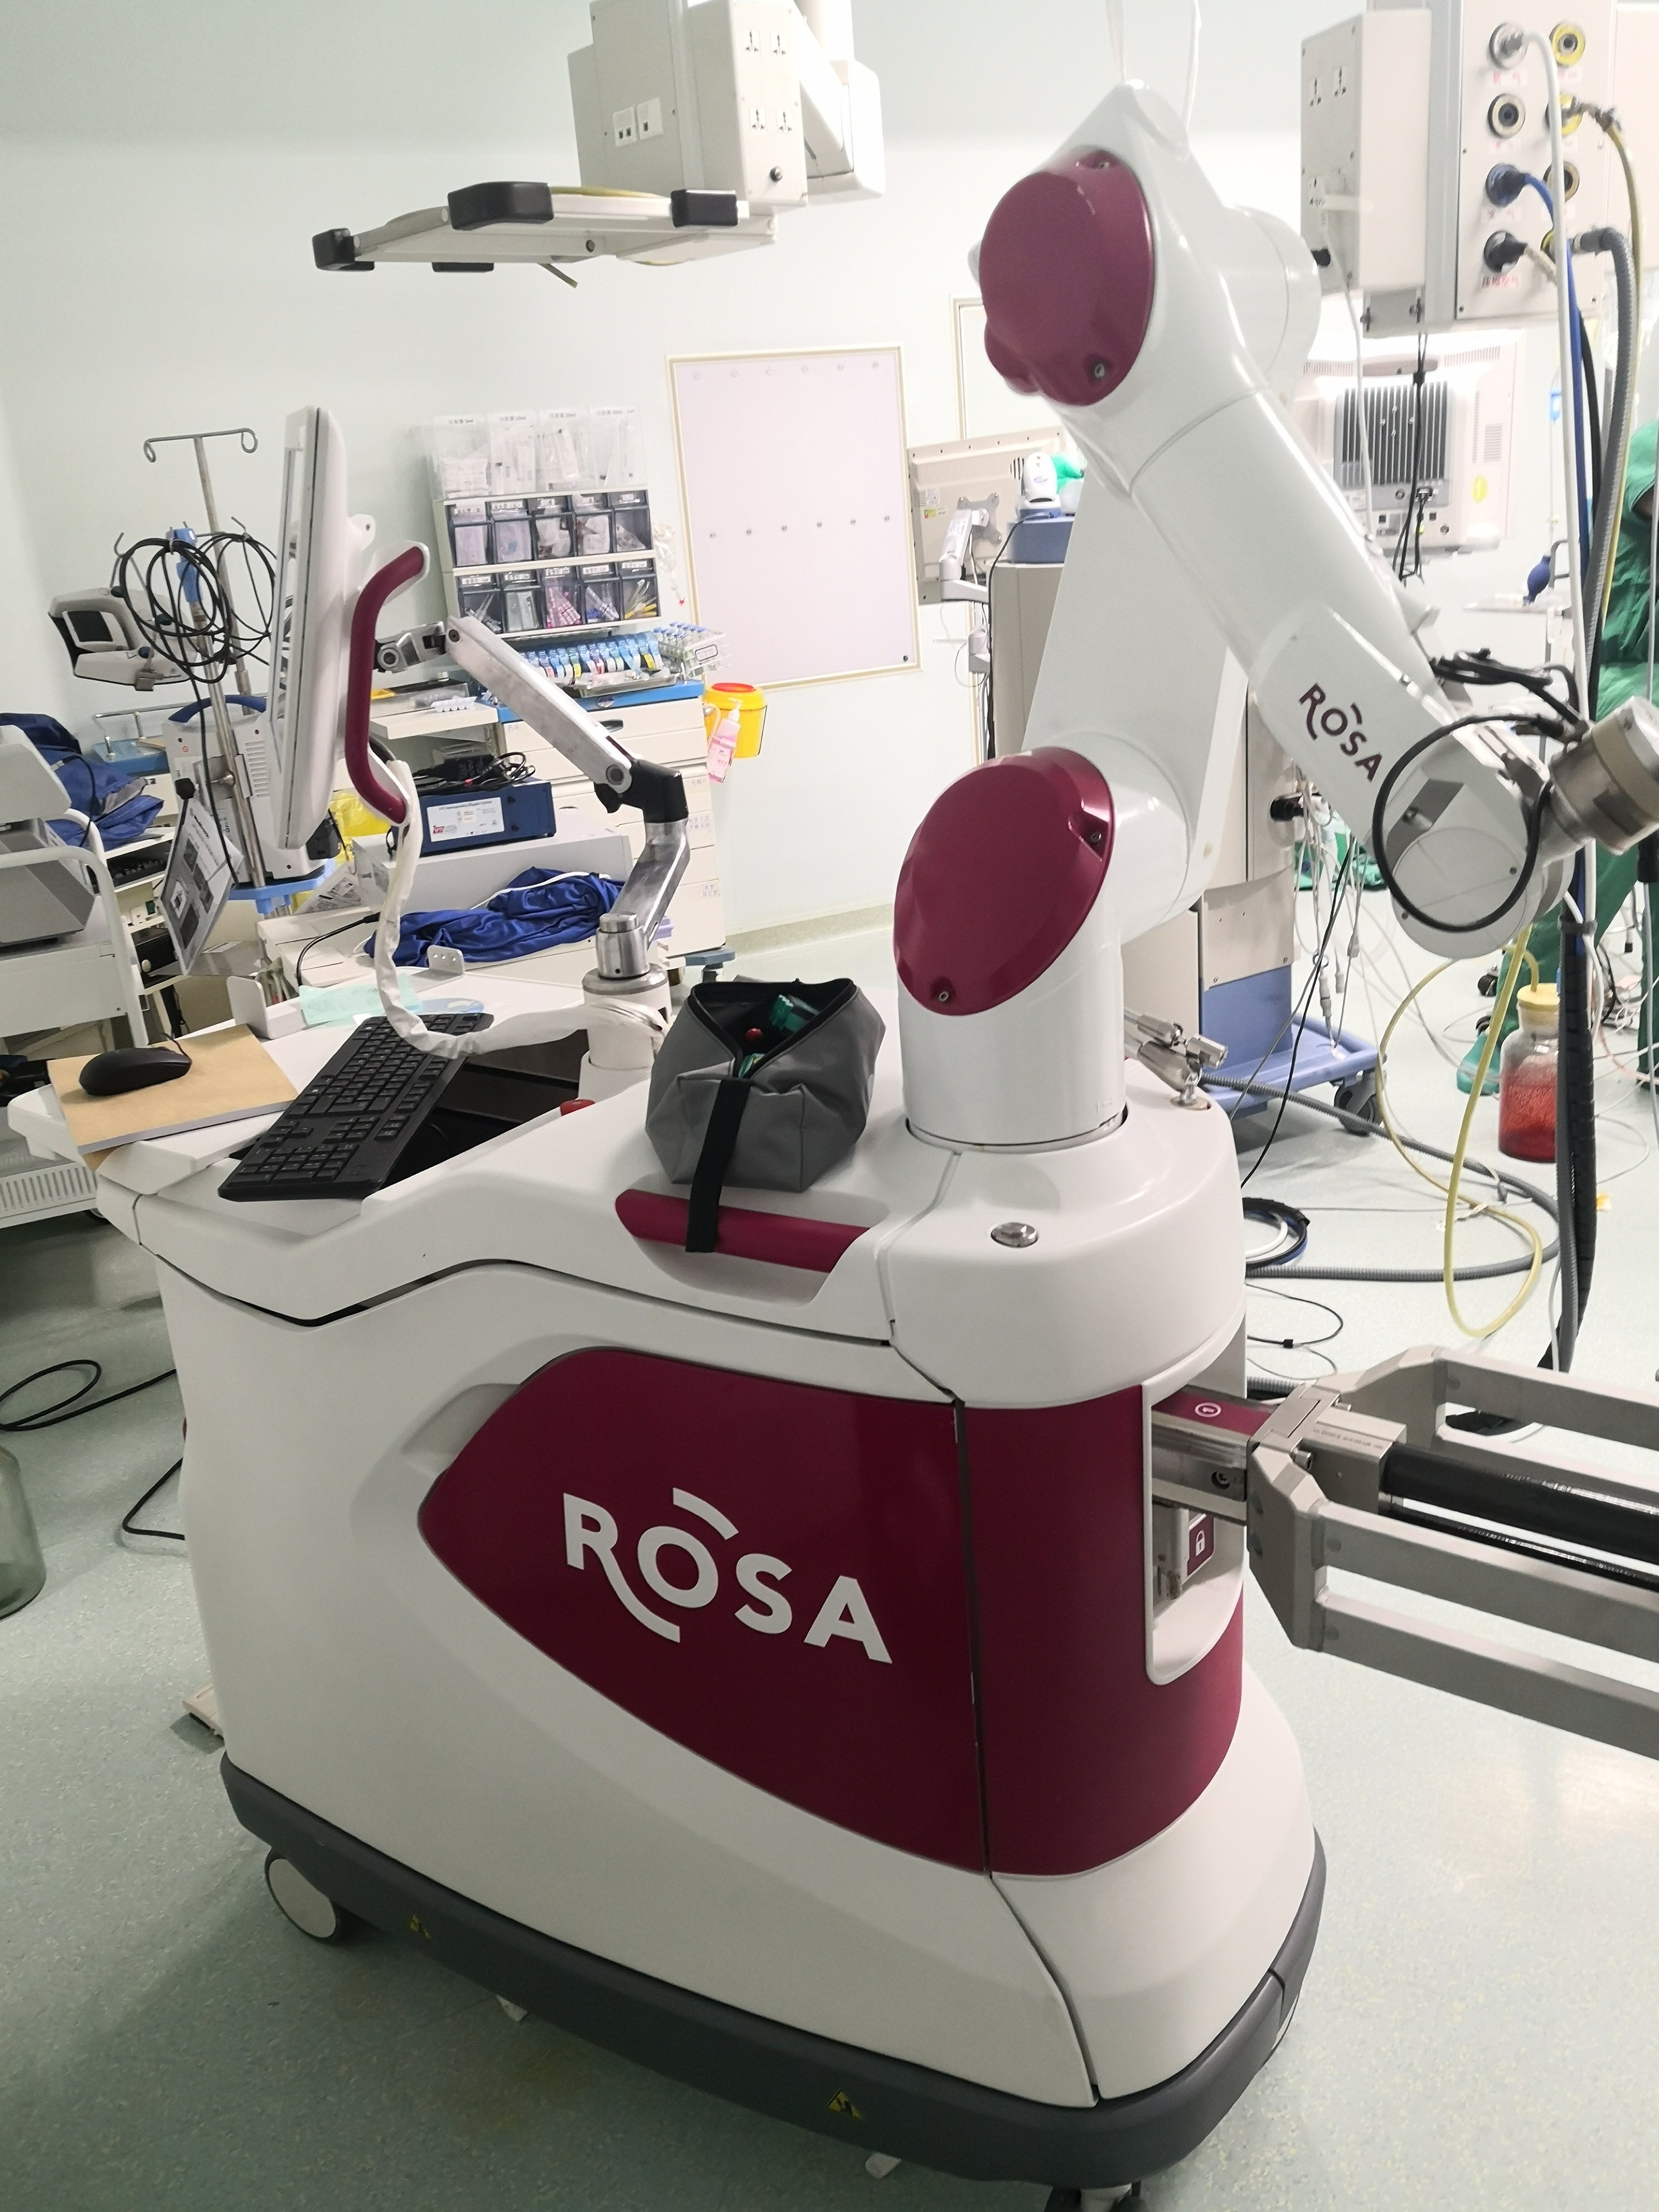 one,目前世界上最智能最先进的机器人作者在应用机器人为患者进行手术